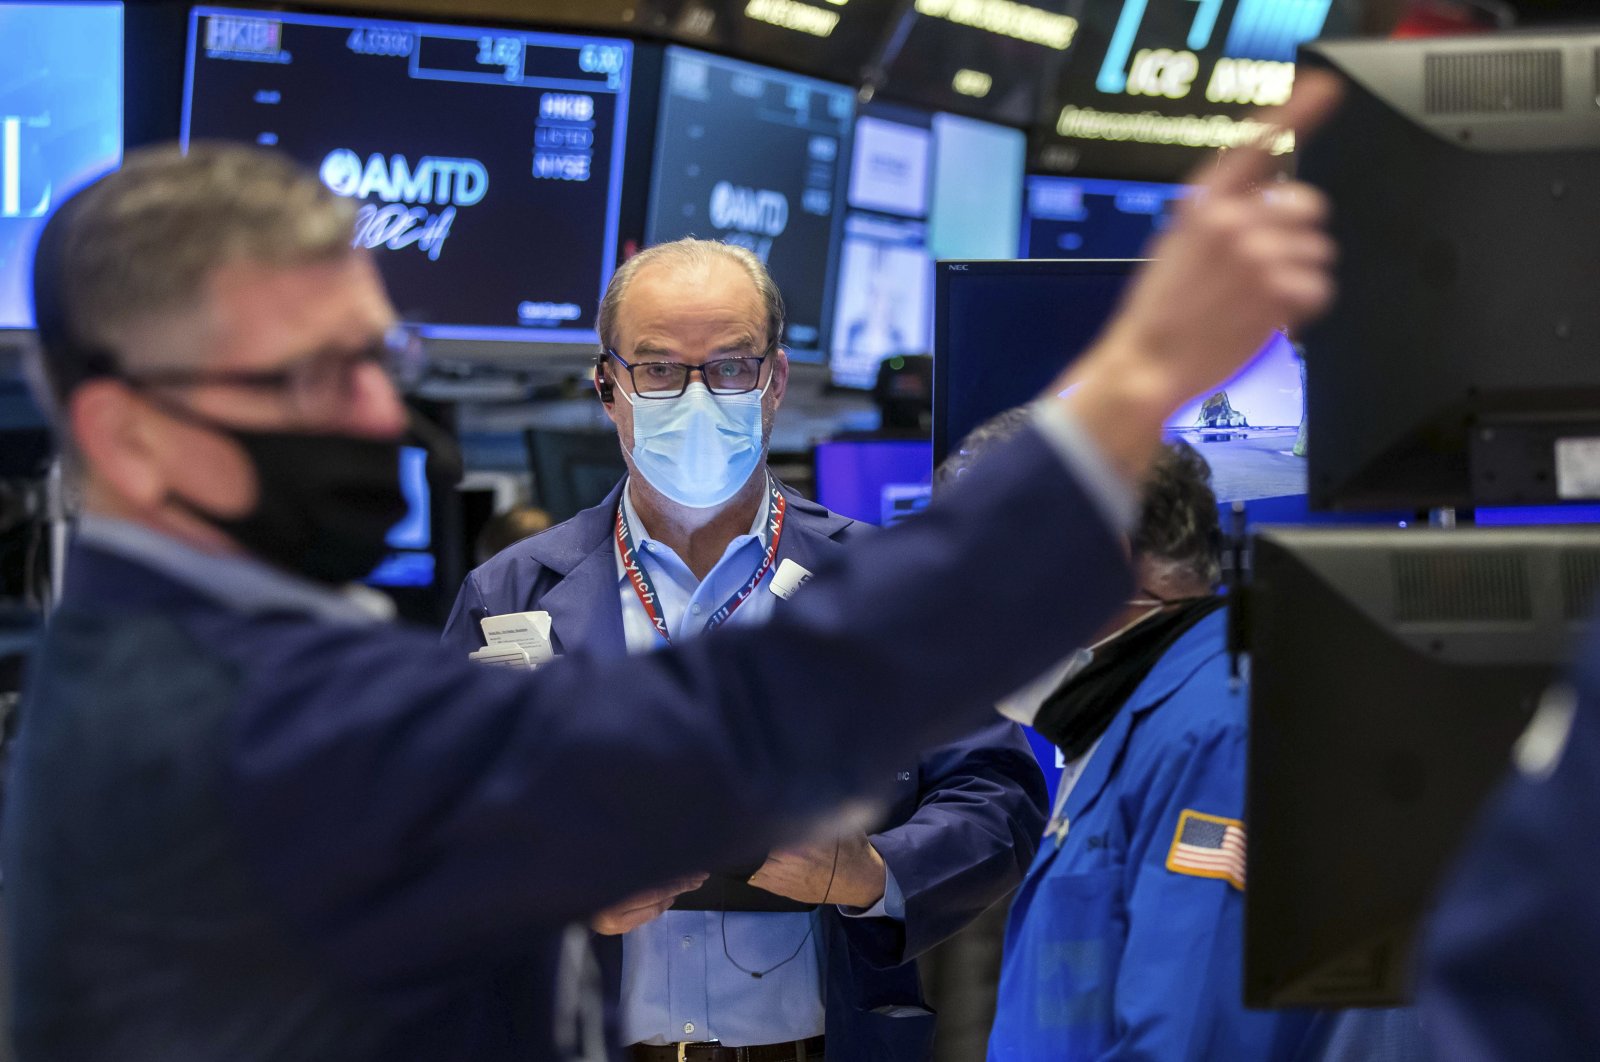 Nasdaq turun 4%, S&P 500 turun 3,4% karena saham AS jatuh